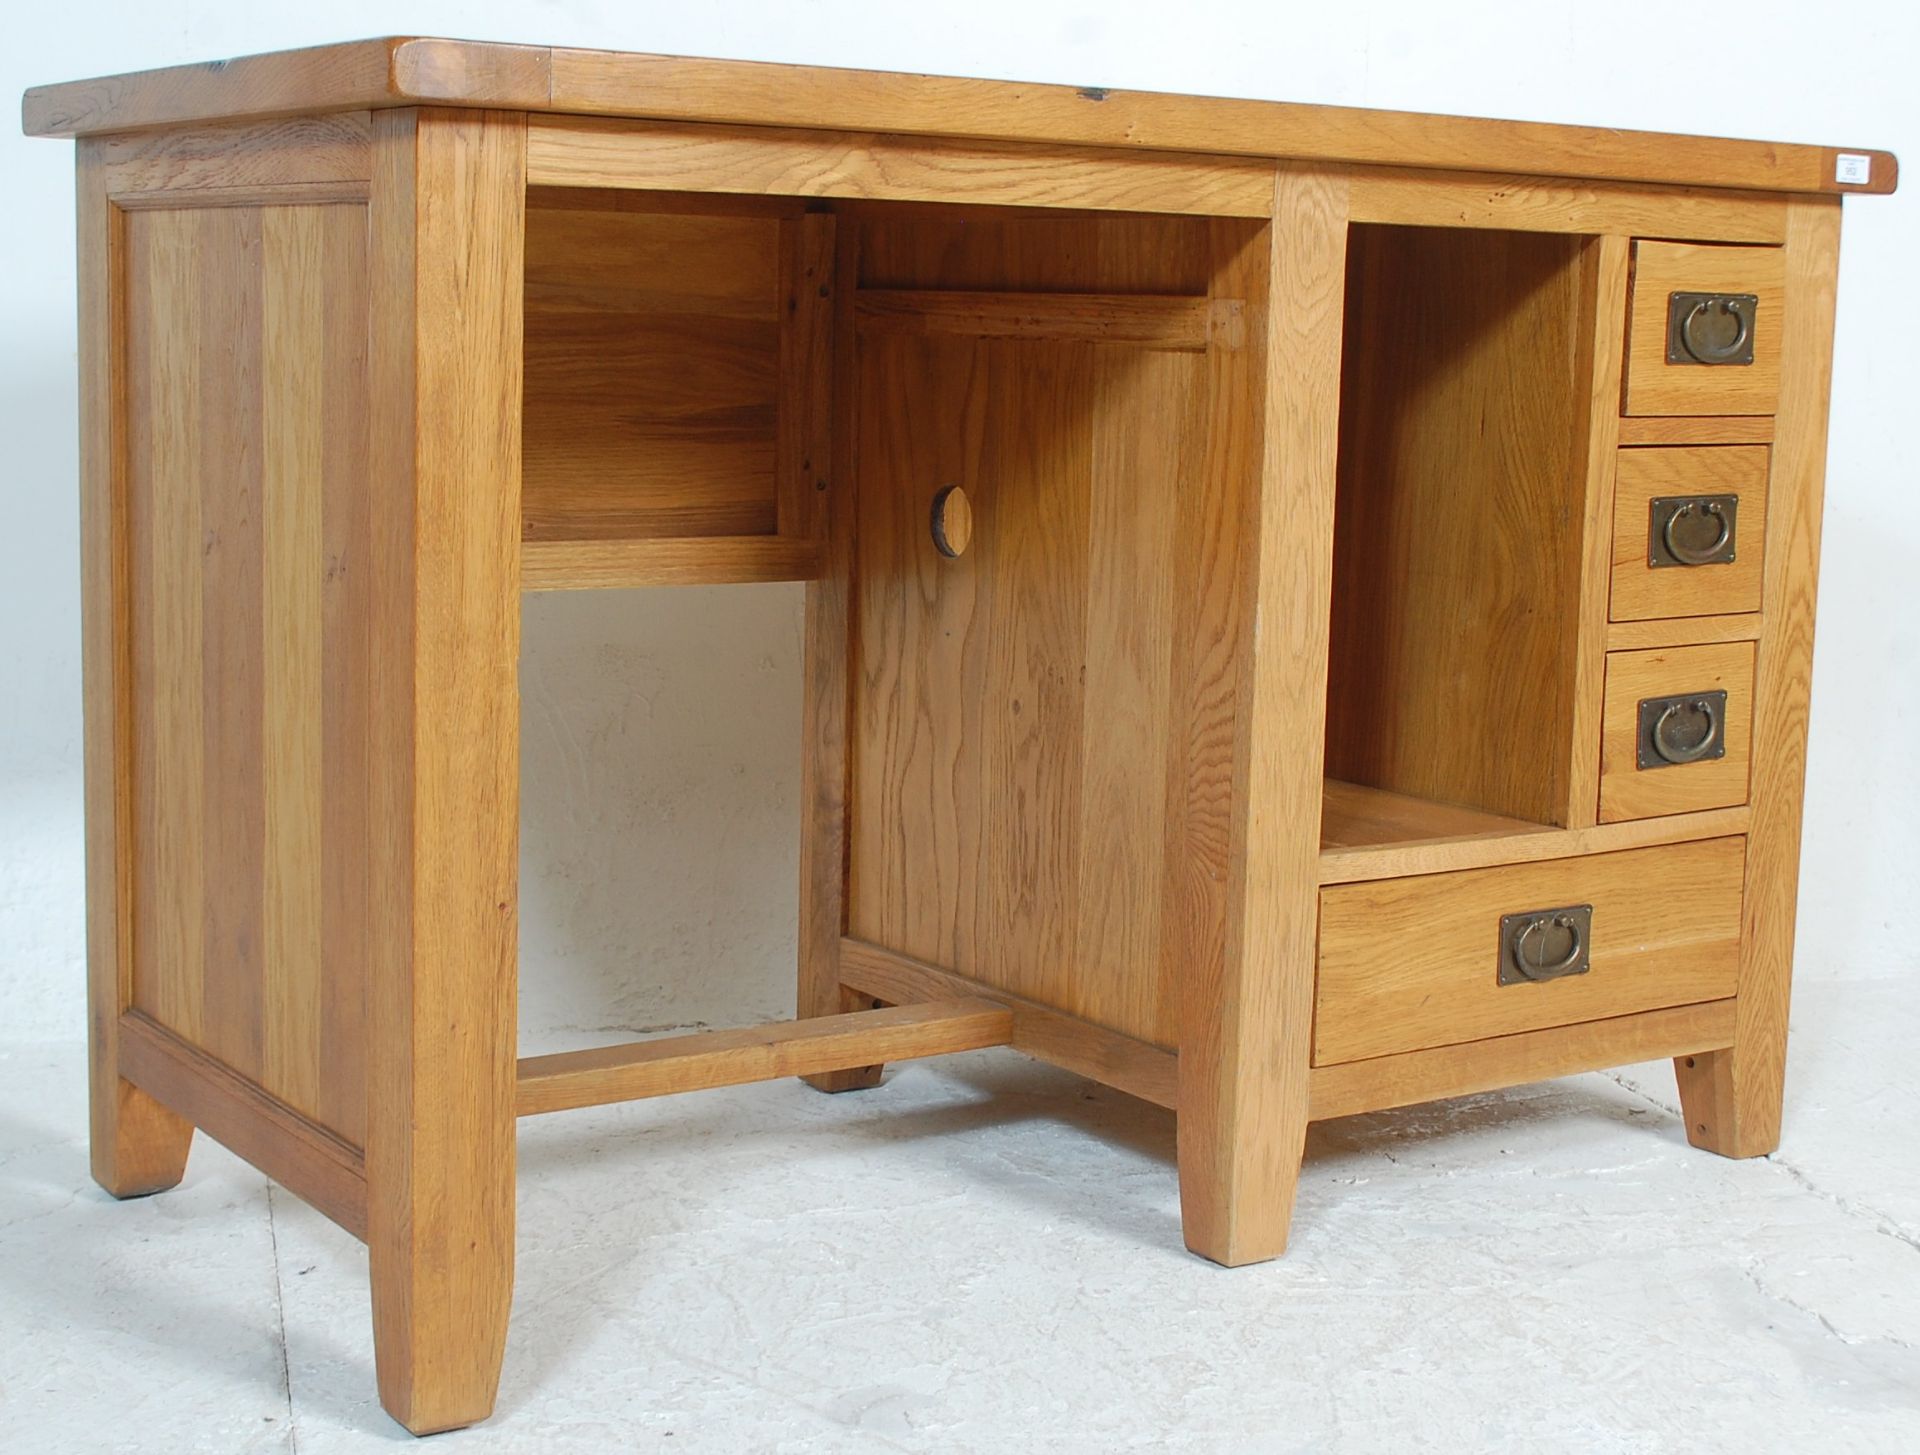 A contemporary chunky oak furniture land inspired golden oak desk having an open kneehole recess